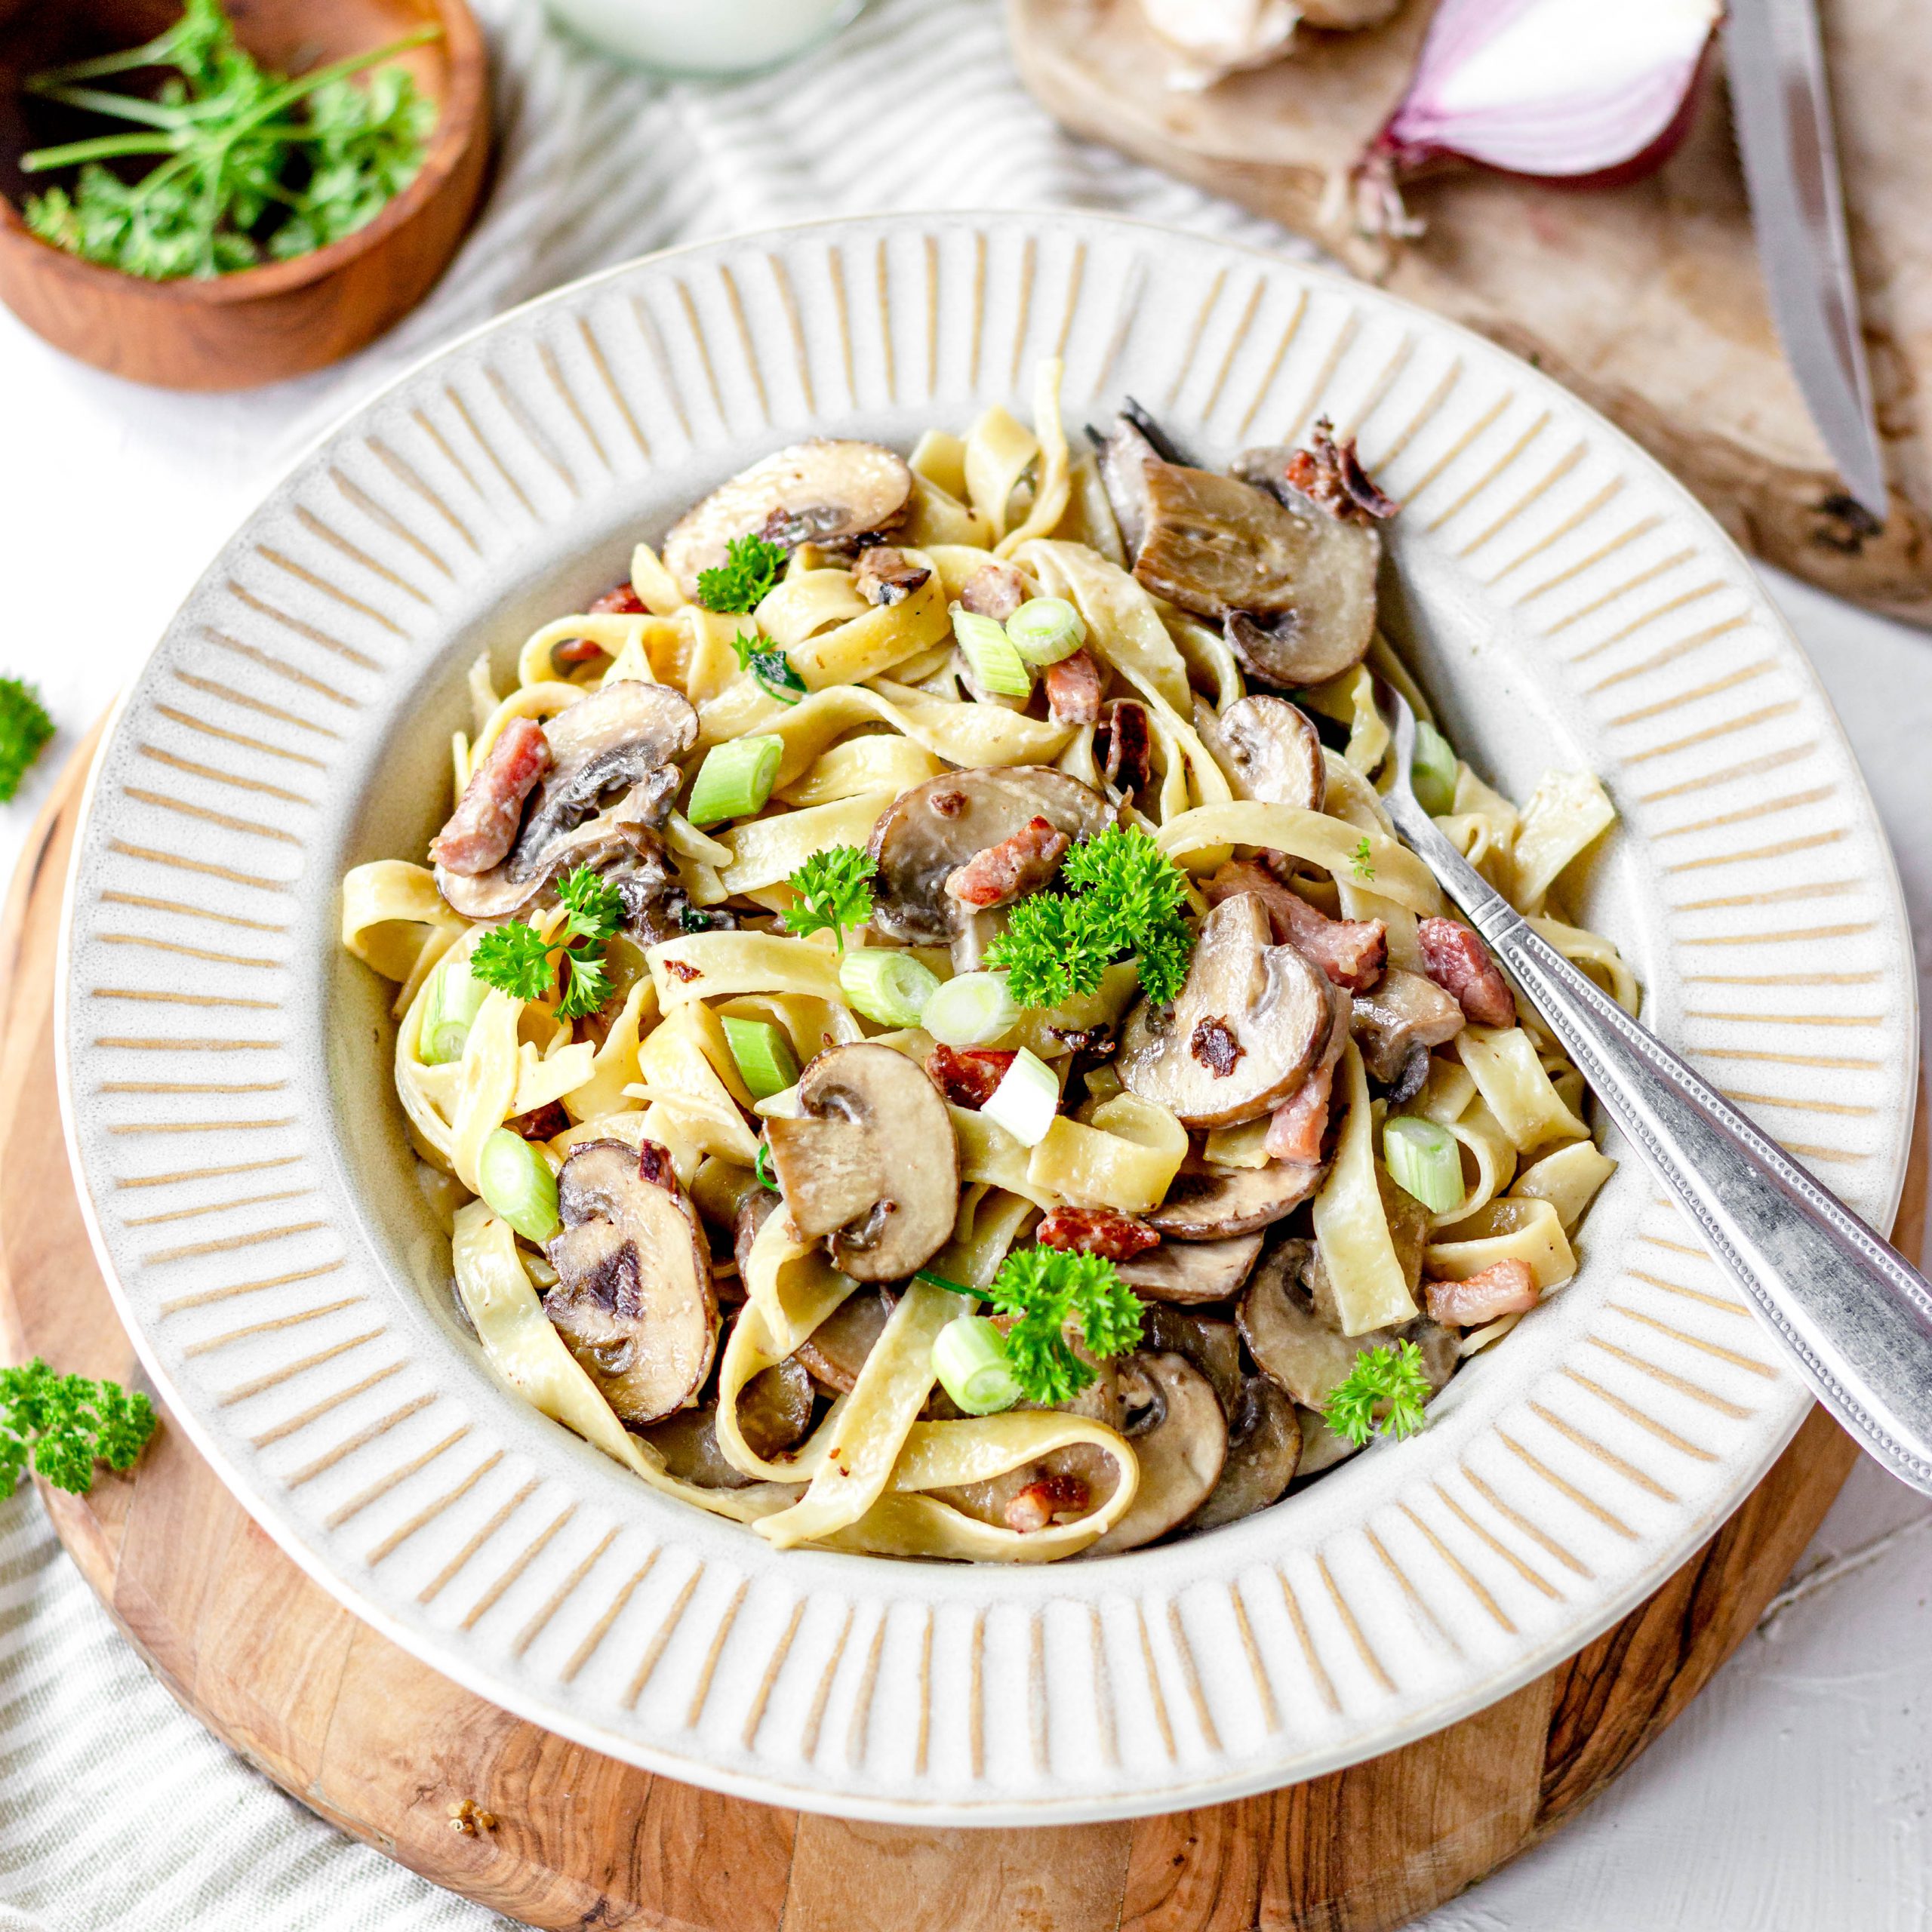 Lactosevrije pasta met room en champignons